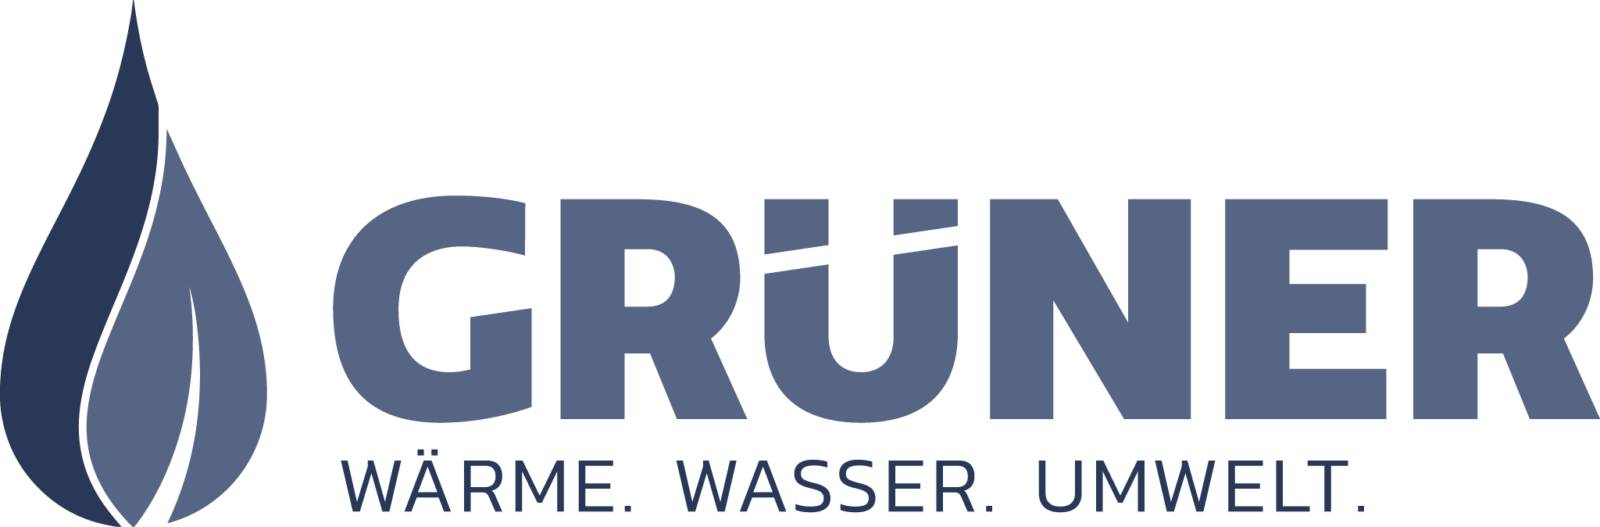 001_gruener-logo-claim_transparent